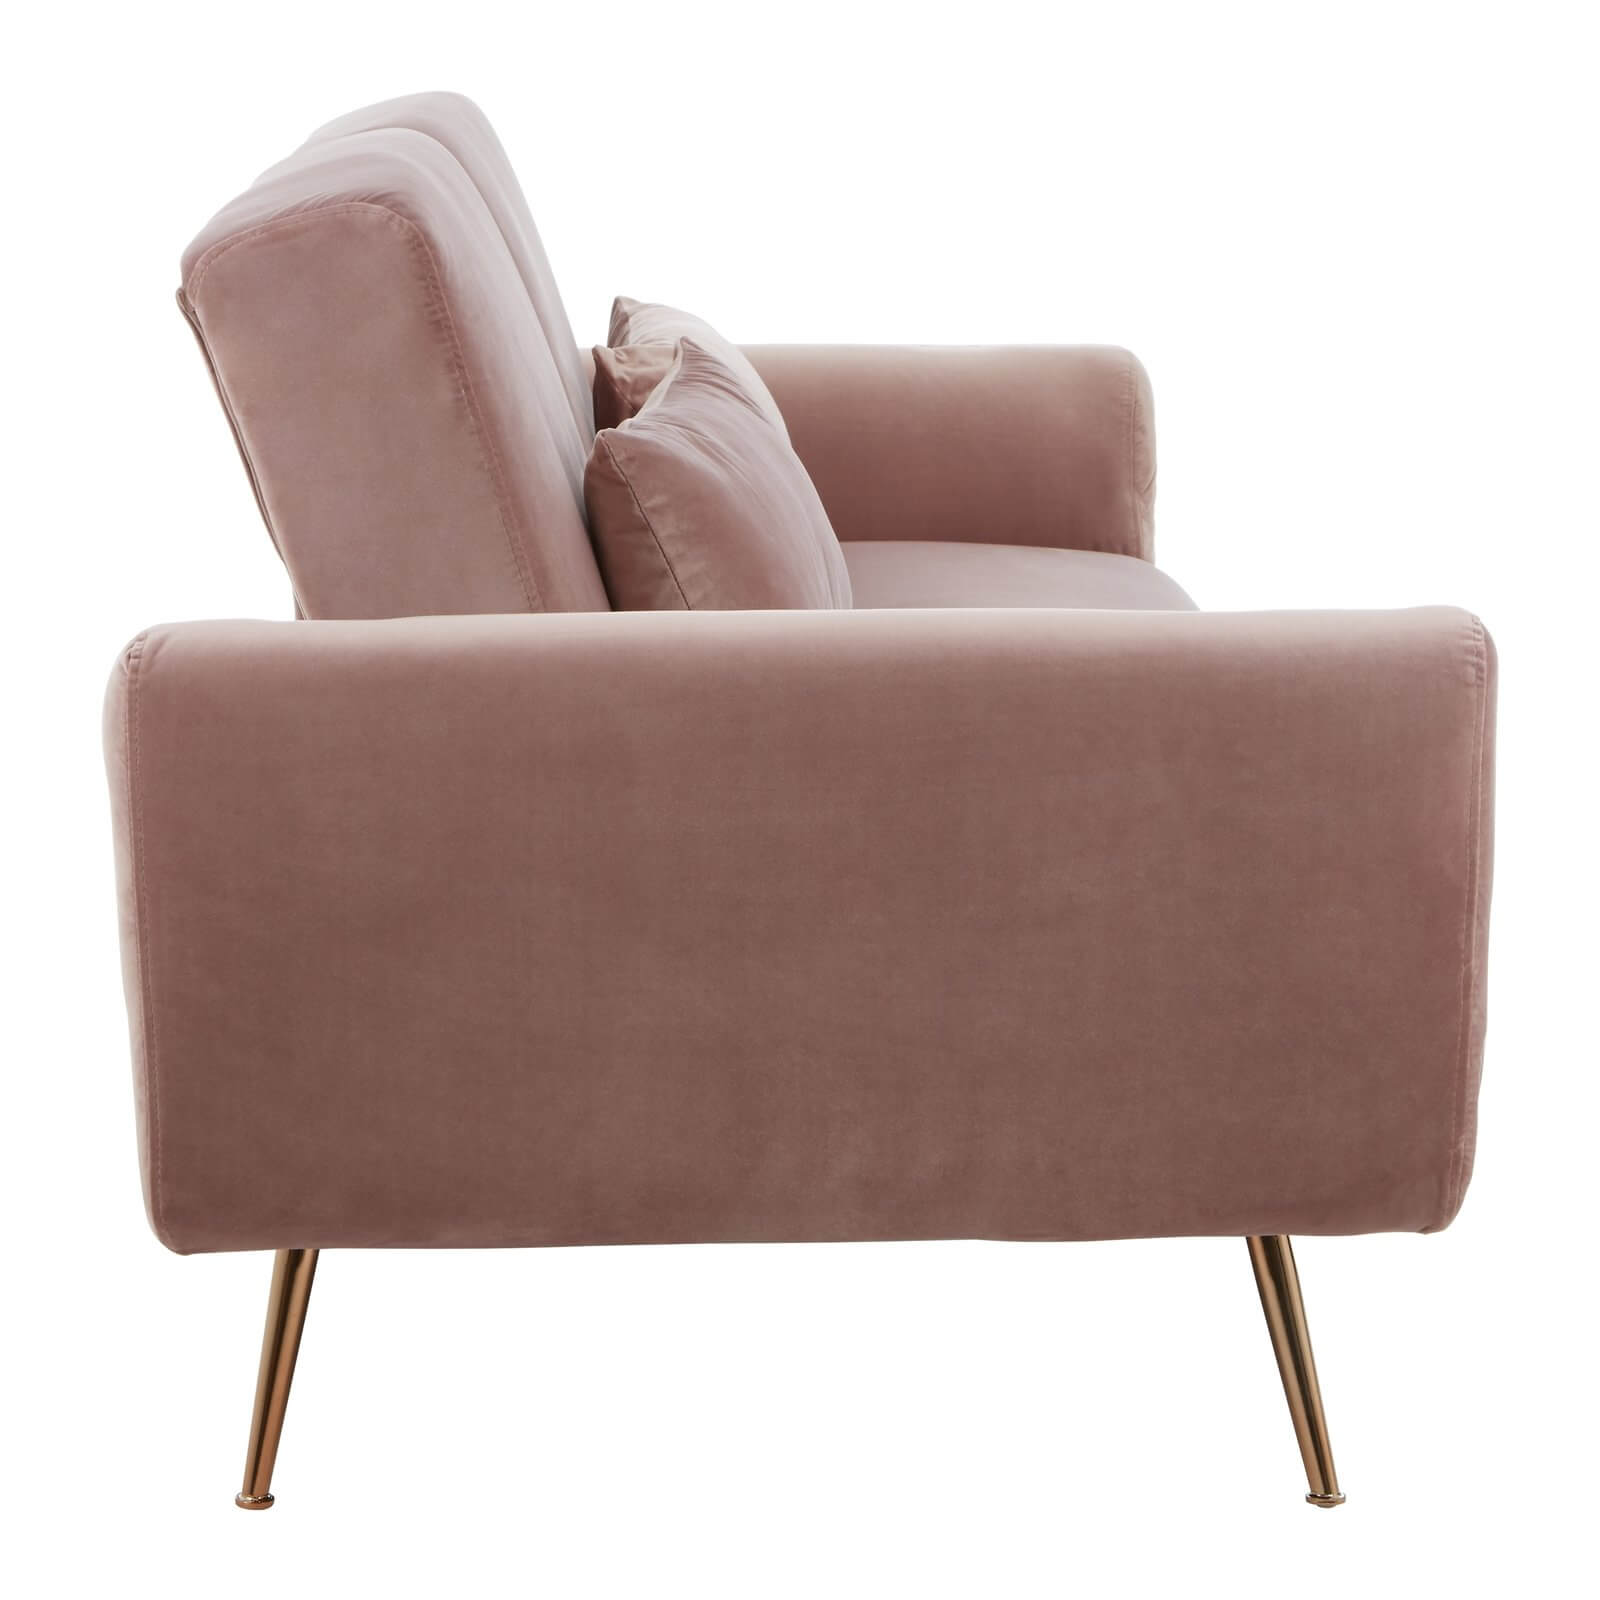 Houston Sofa Bed - Pink Velvet